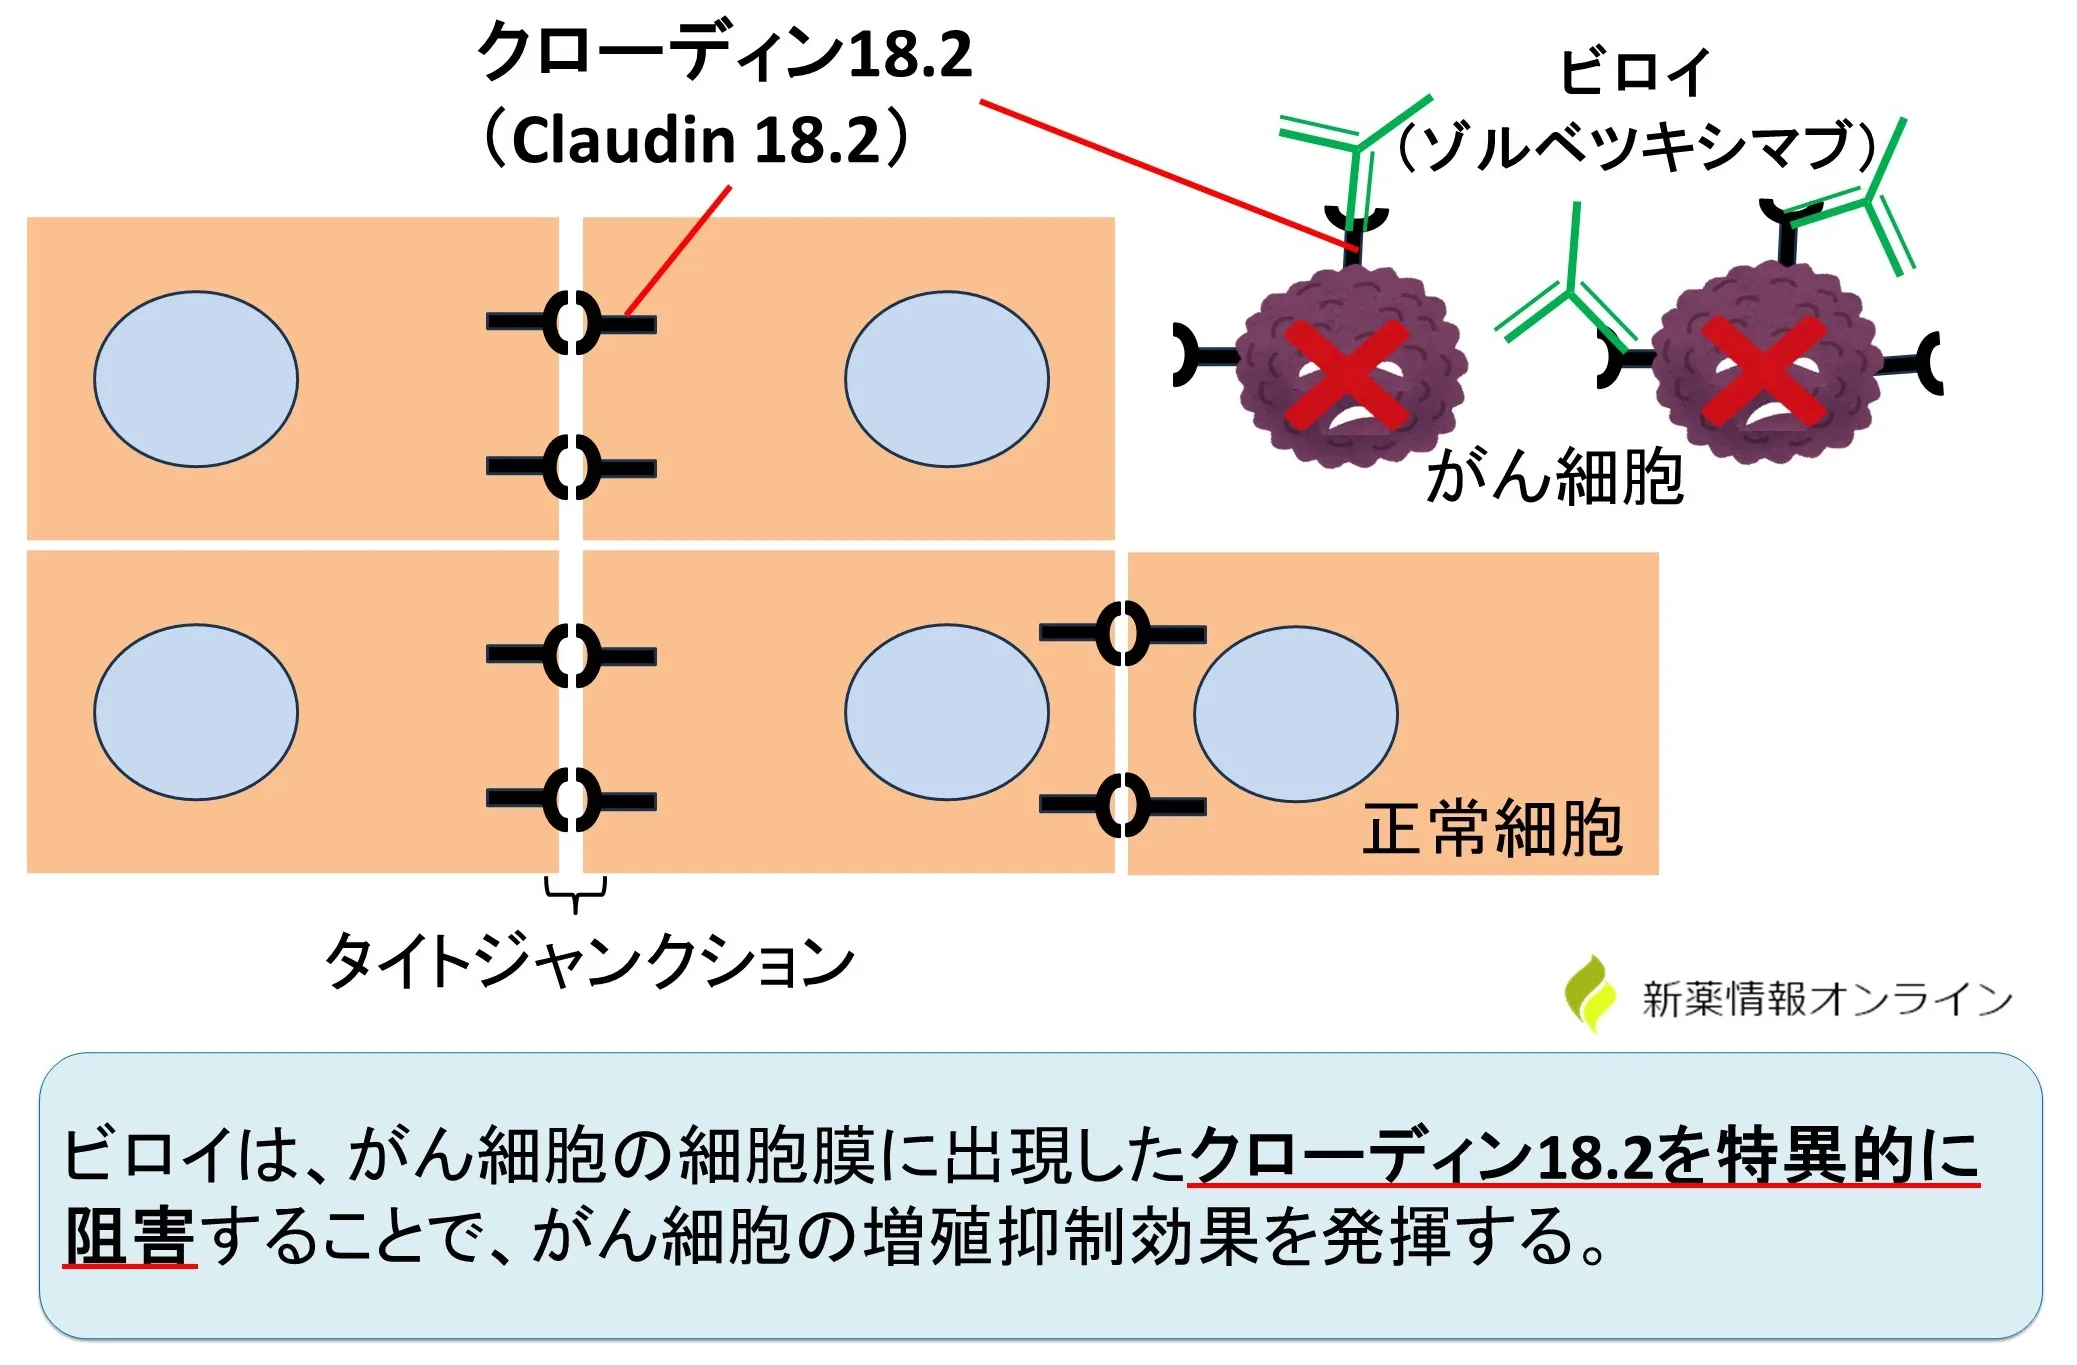 ビロイ（ゾルベツキシマブ）の作用機序：Claudin 18.2（クローディン18.2）を特異的に認識する抗体薬